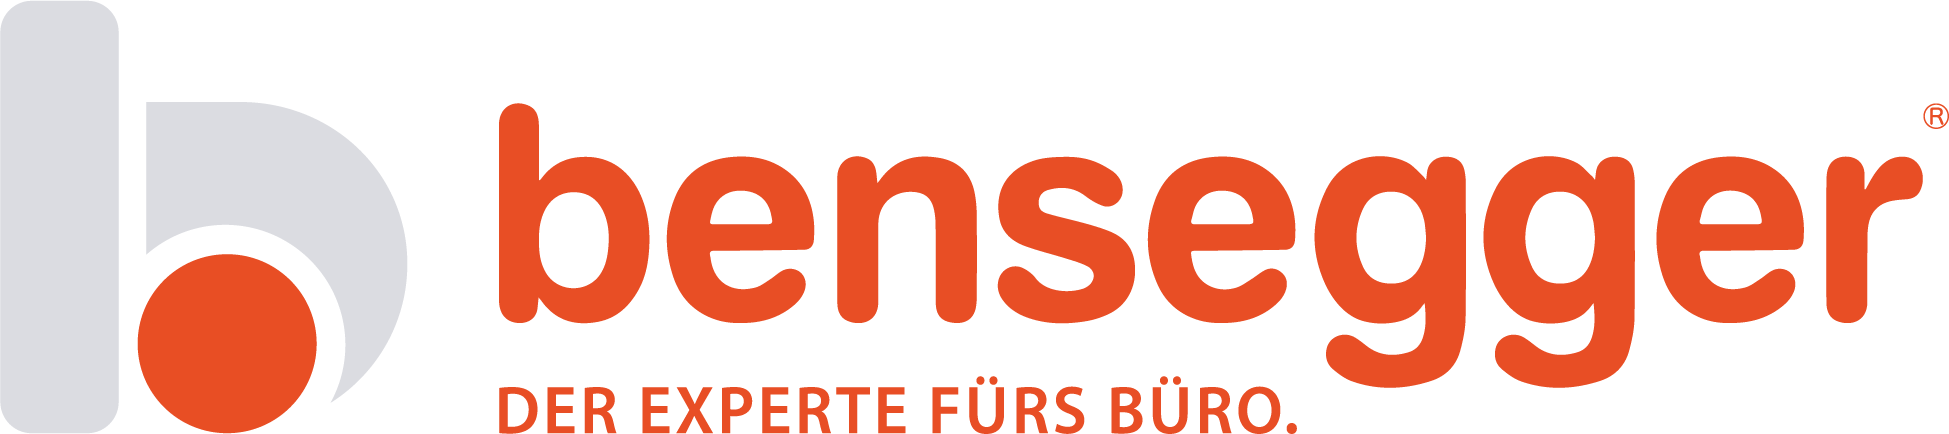 Präqualifizierung nach VOL: Bensegger GmbH wieder erfolgreich zertifiziert